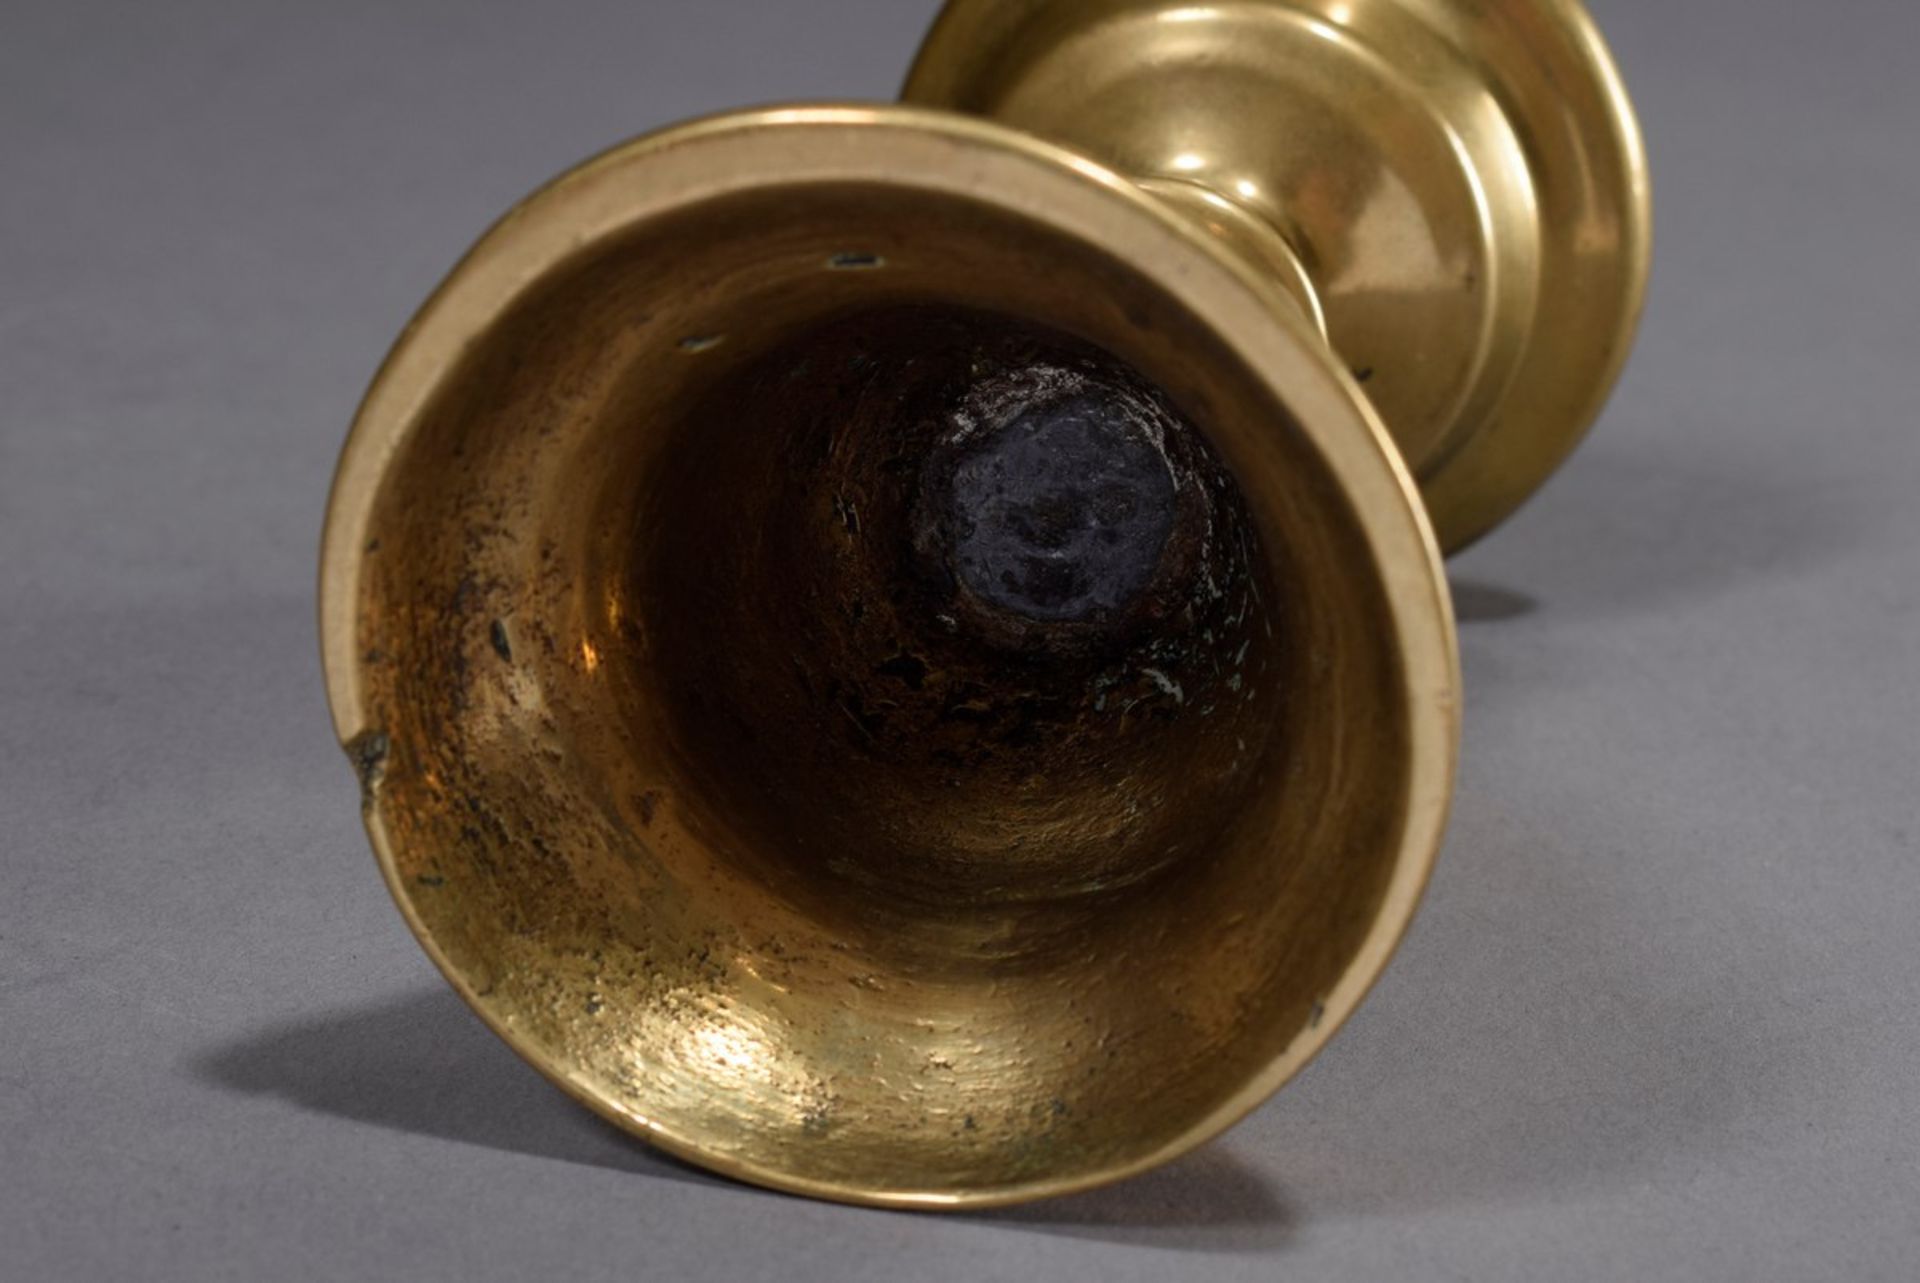 Antiker Gelbguss Leuchter mit abgetreppten Wülst | Antique brass candlestick with stepped beads and - Bild 3 aus 3